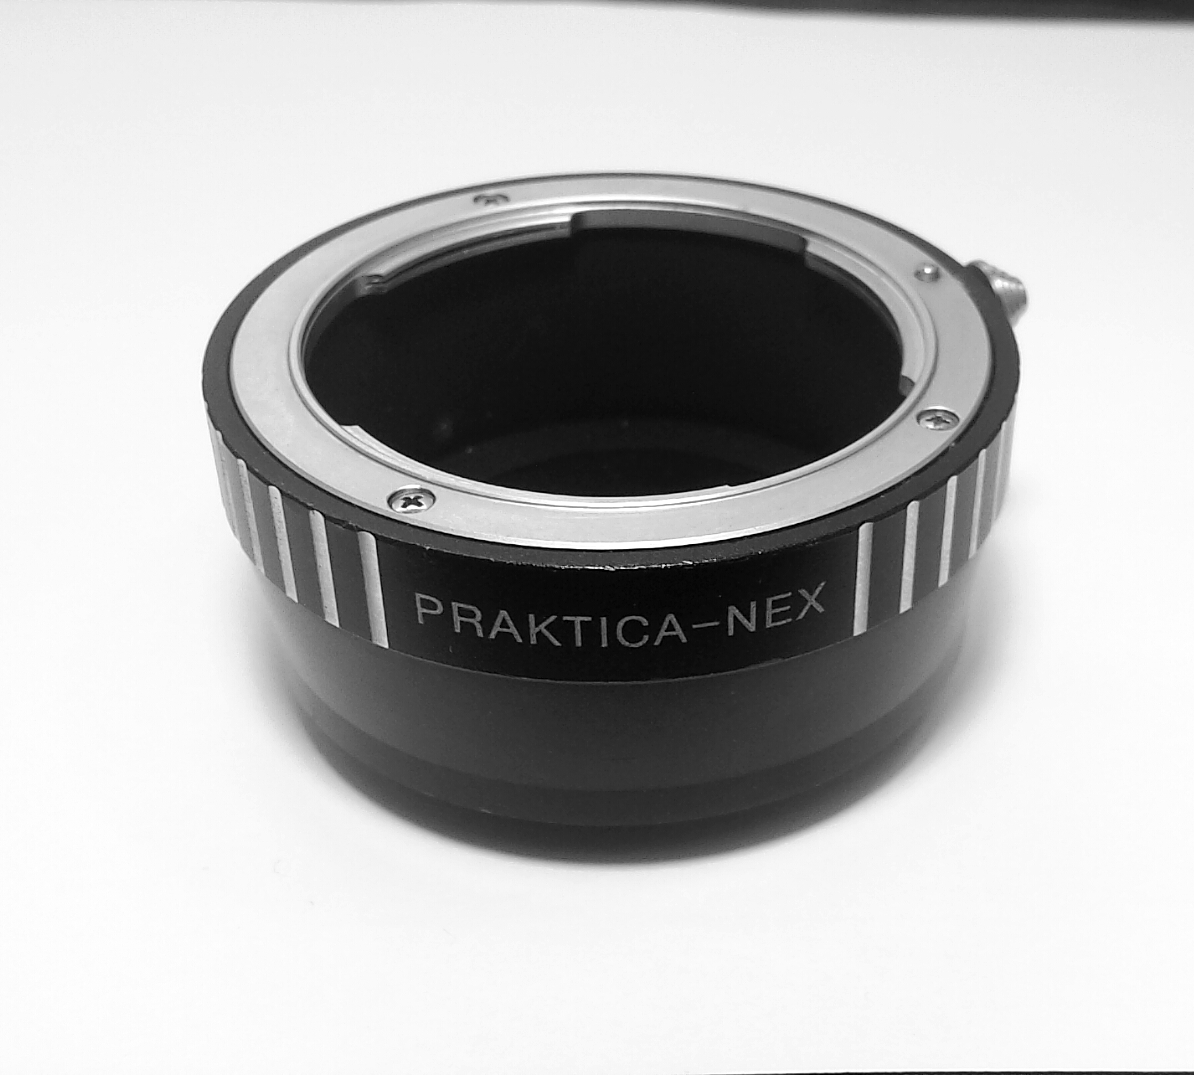 Praktica PB Lens to NEX Camera Body Adapter